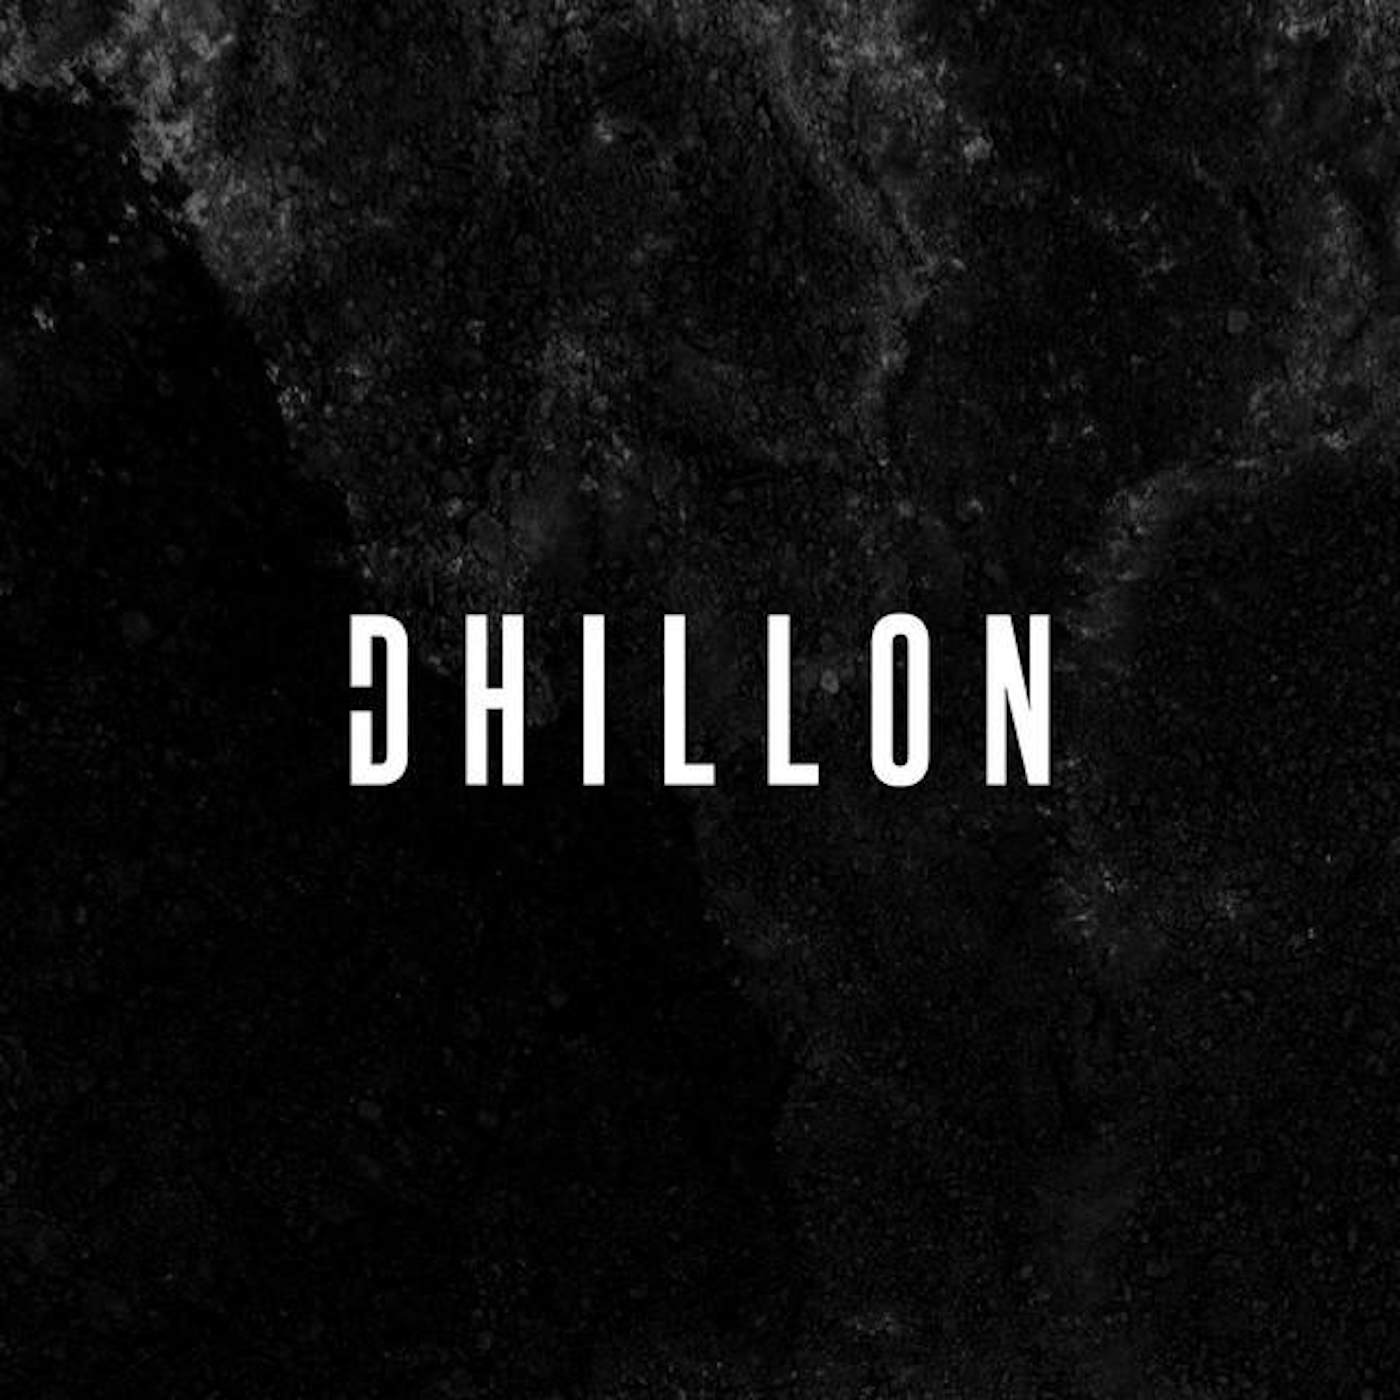 Dhillon